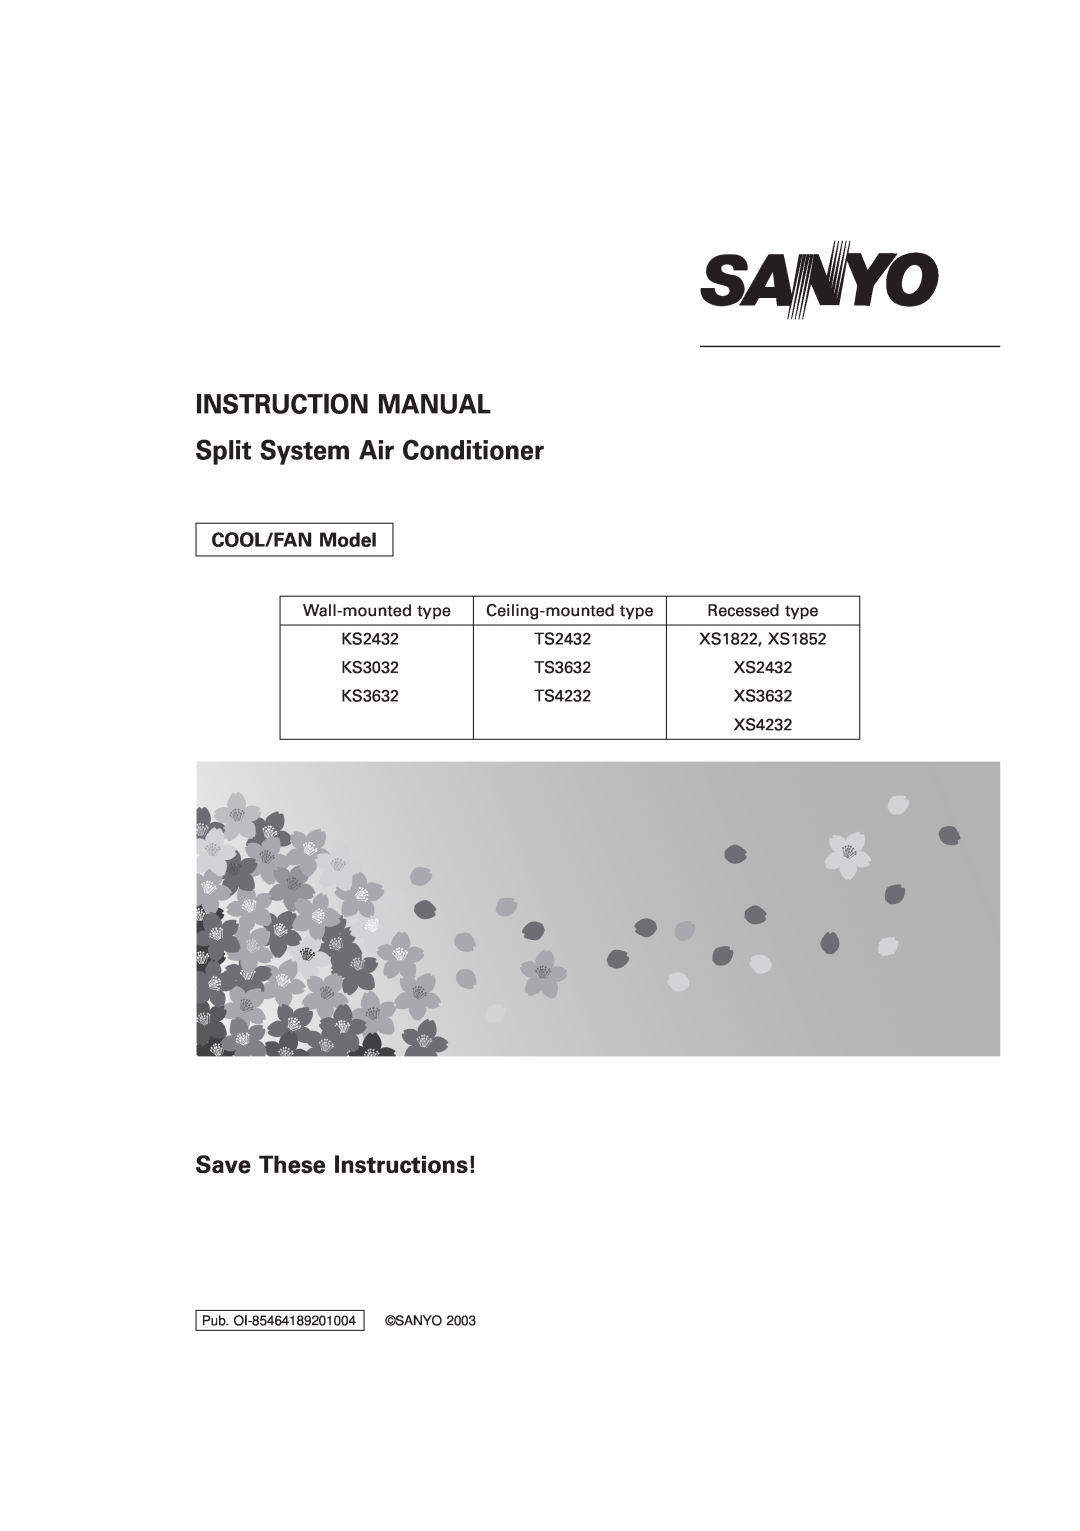 Sanyo TS2432, TS3632, TS4232, XS2432, XS1822, XS4232, XS3632, KS3032 instruction manual Save These Instructions, COOL/FAN Model 